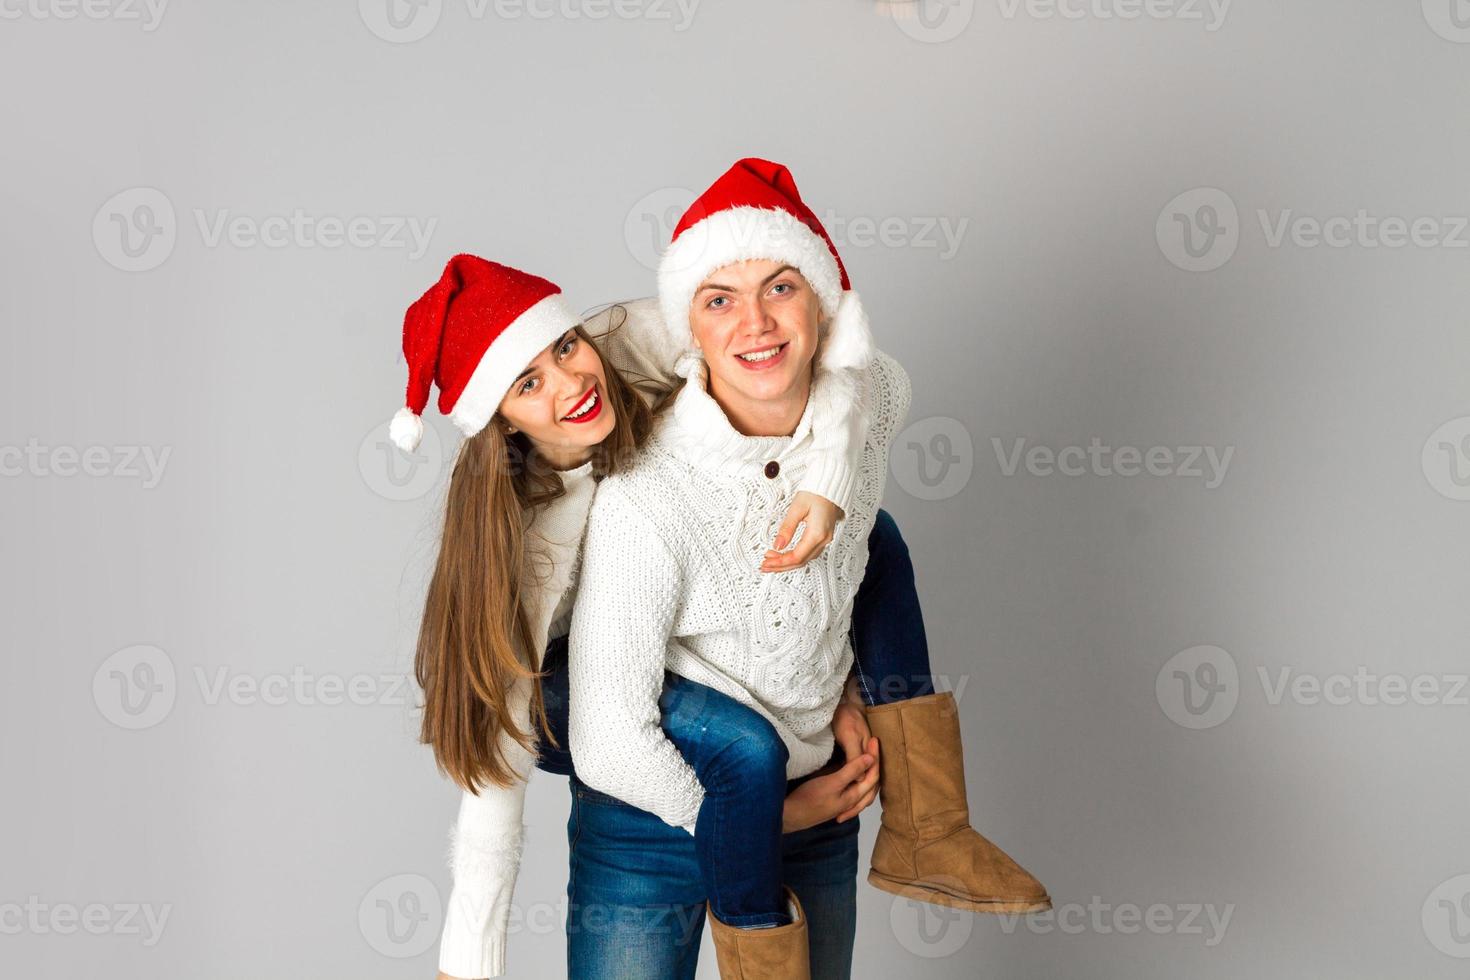 verliebtes paar feiert weihnachten in weihnachtsmütze foto